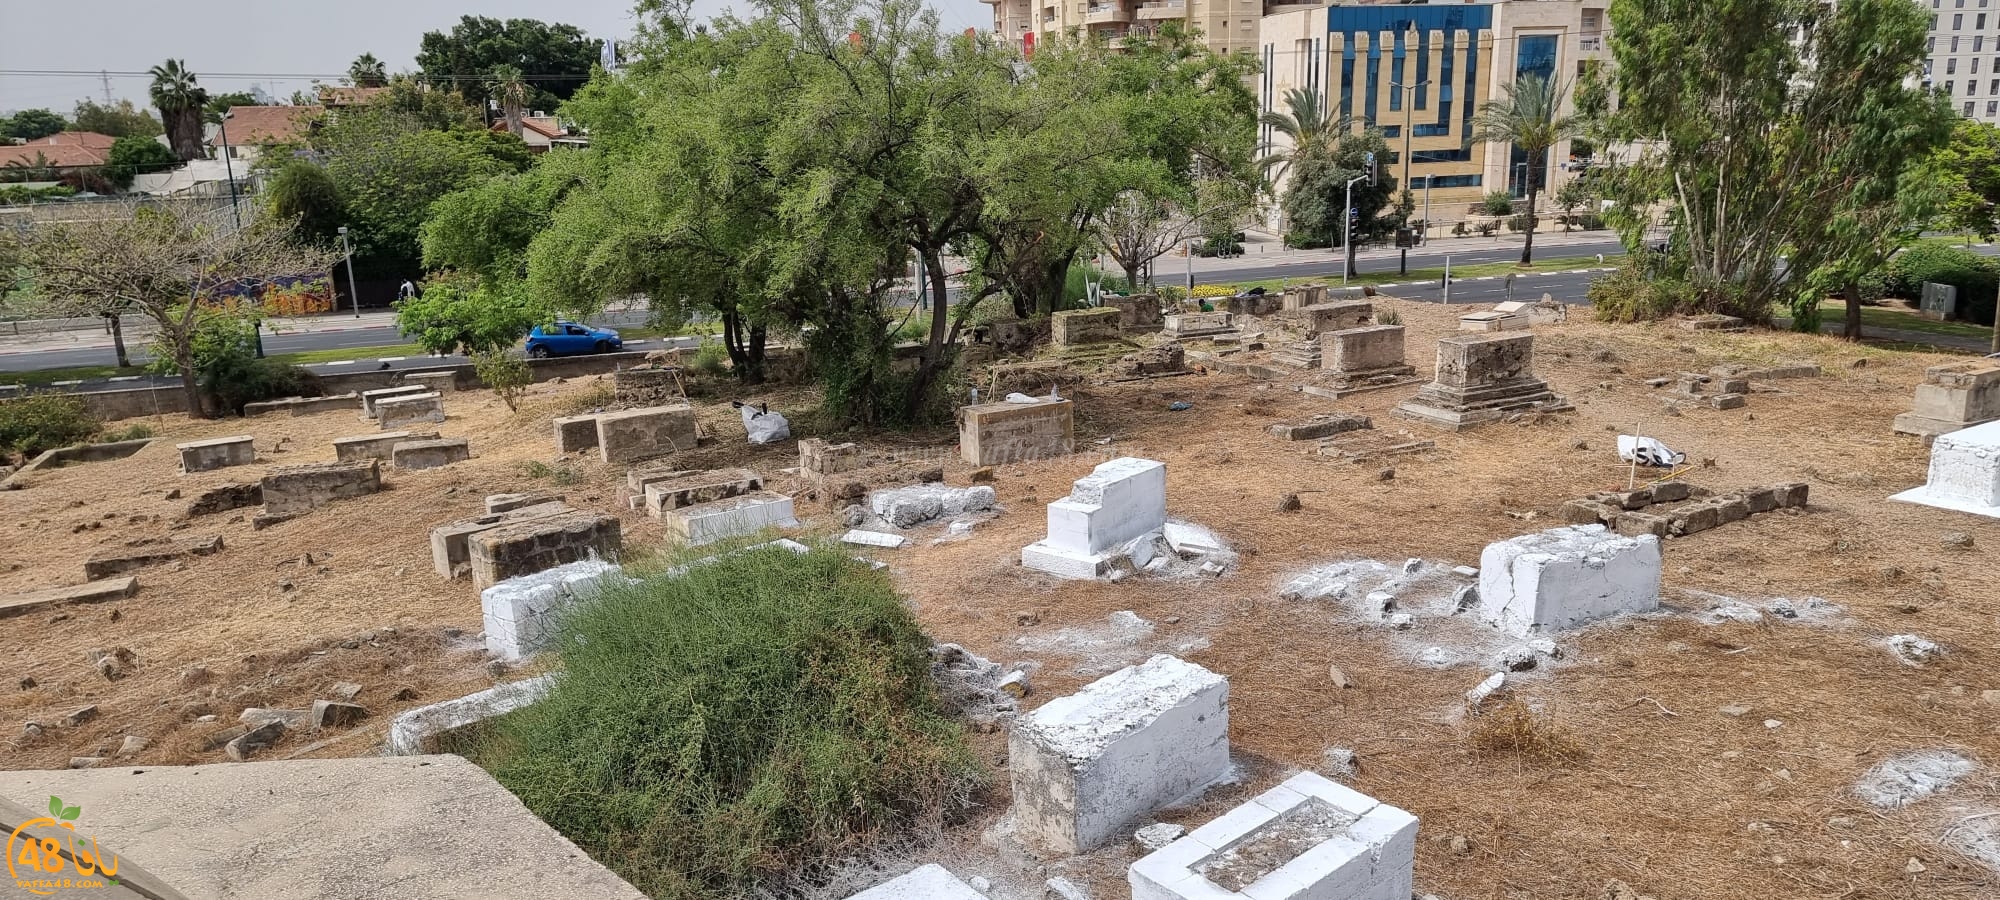  حملة لتنظيف مقبرة الشيخ مراد بيافا 